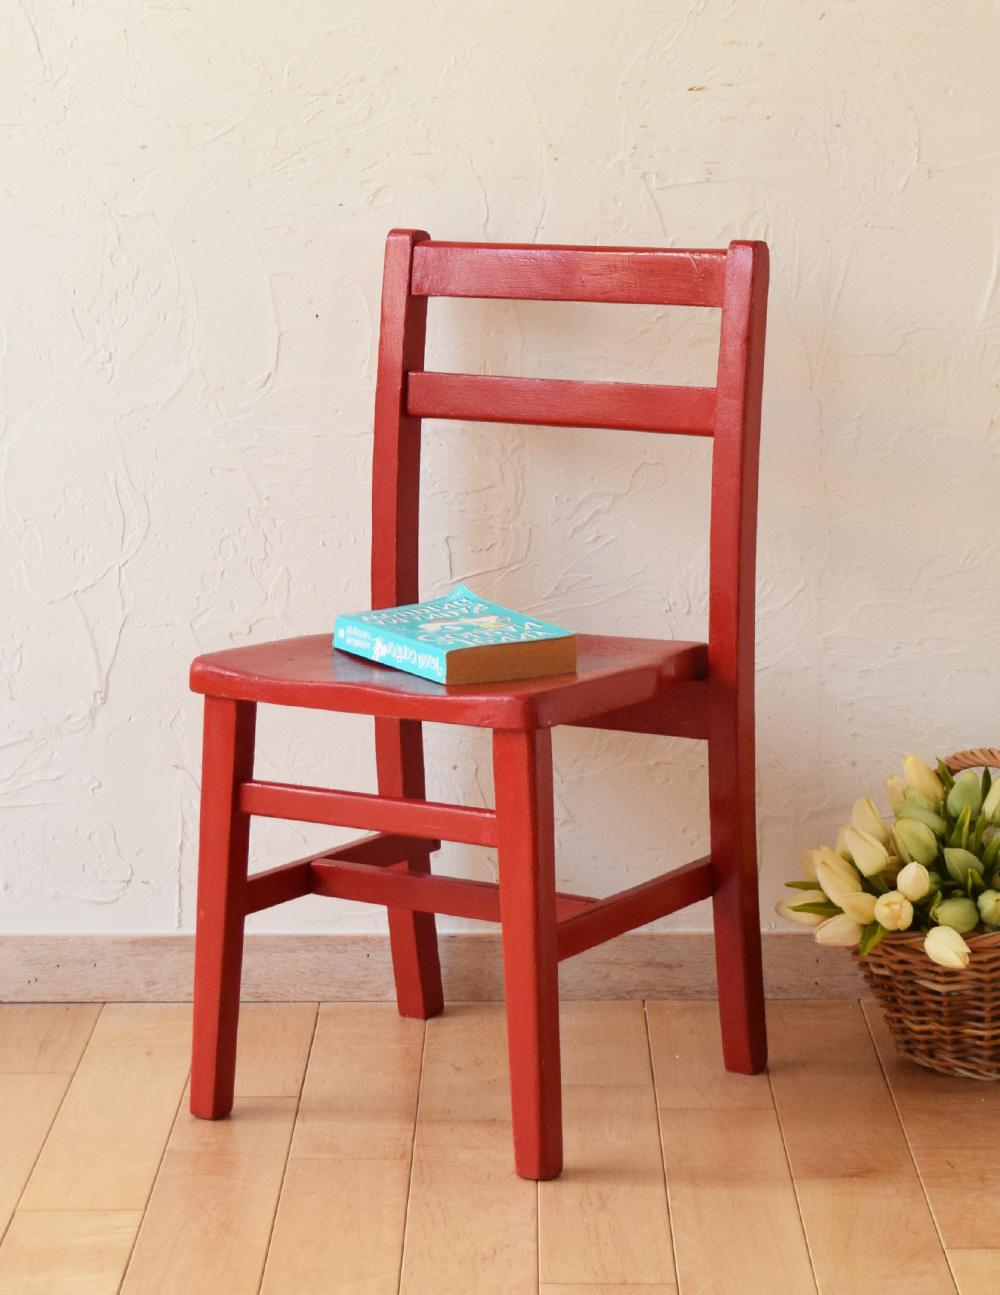 イギリスから届いたアンティーク椅子、赤い色のチャイルドチェア (k-943-c)